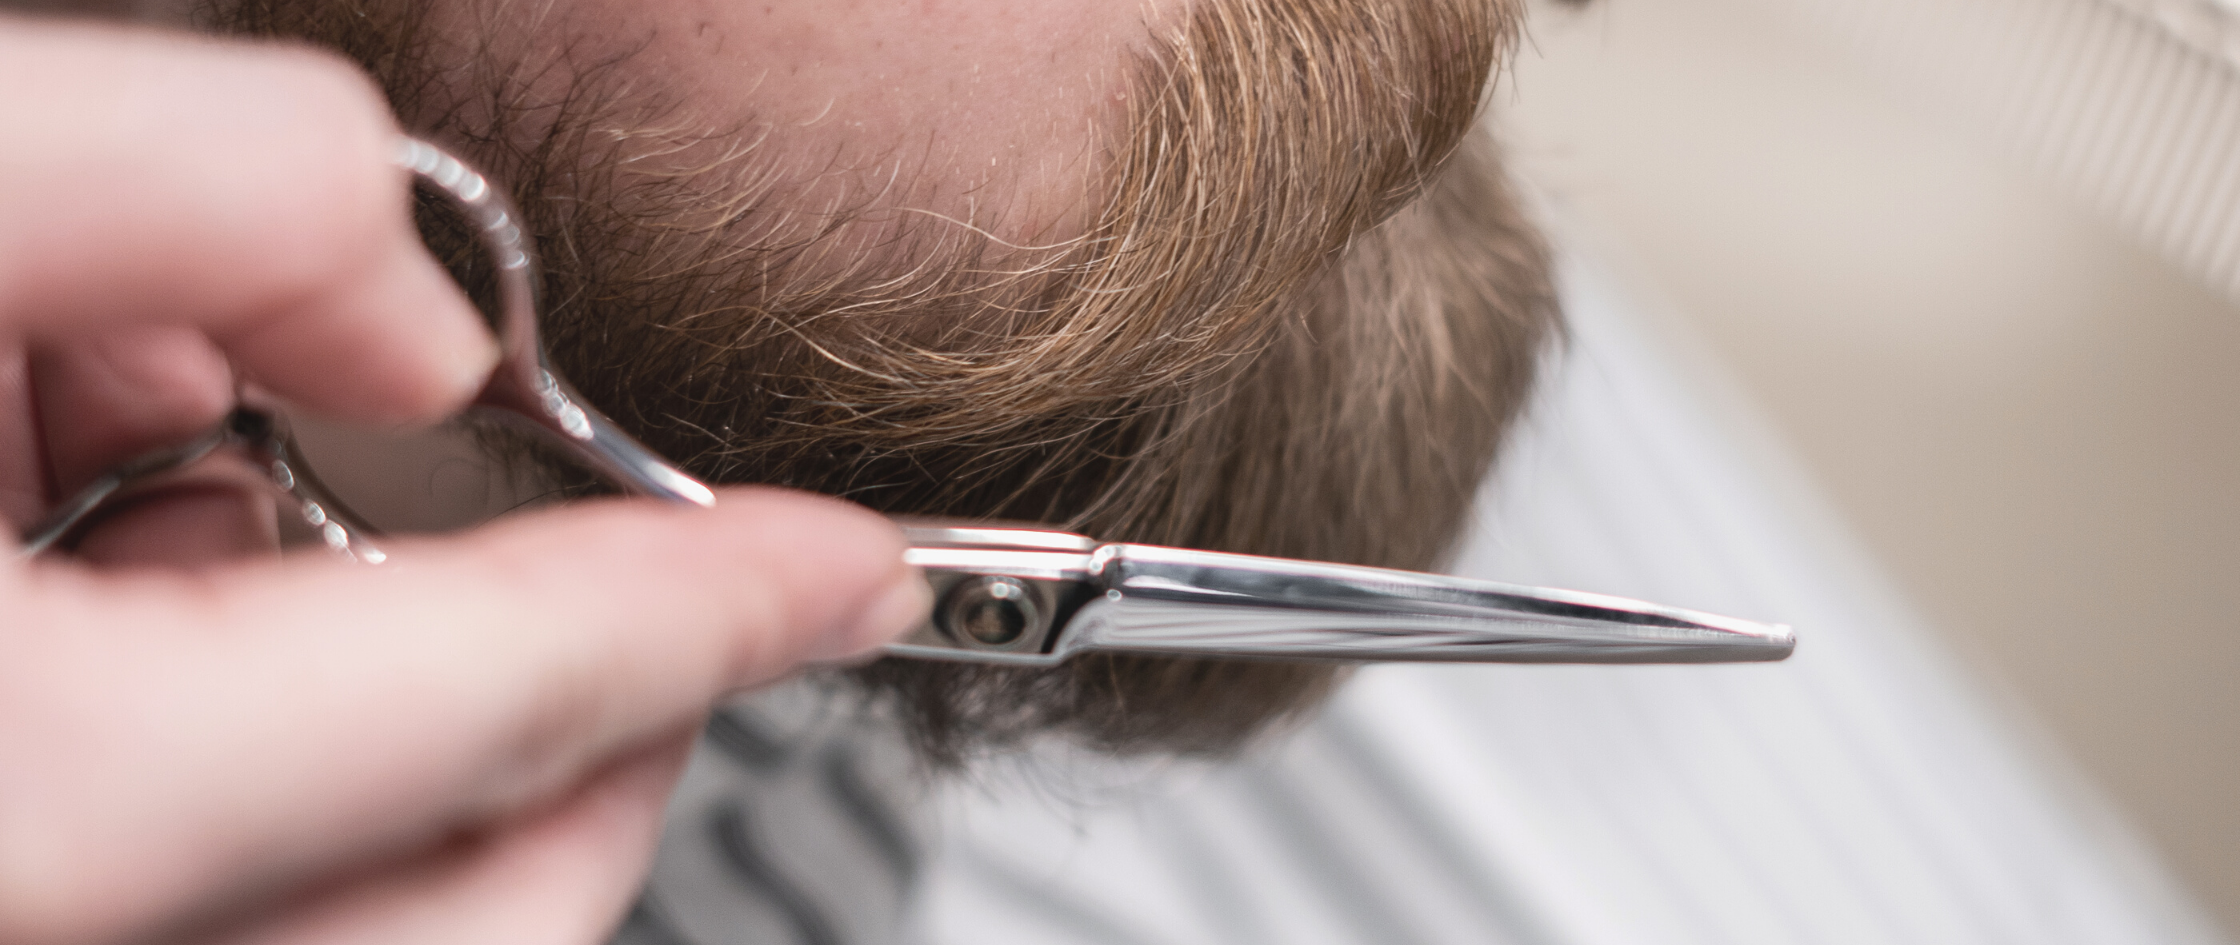 7 Beard Grooming Tips for Absolute Beginners